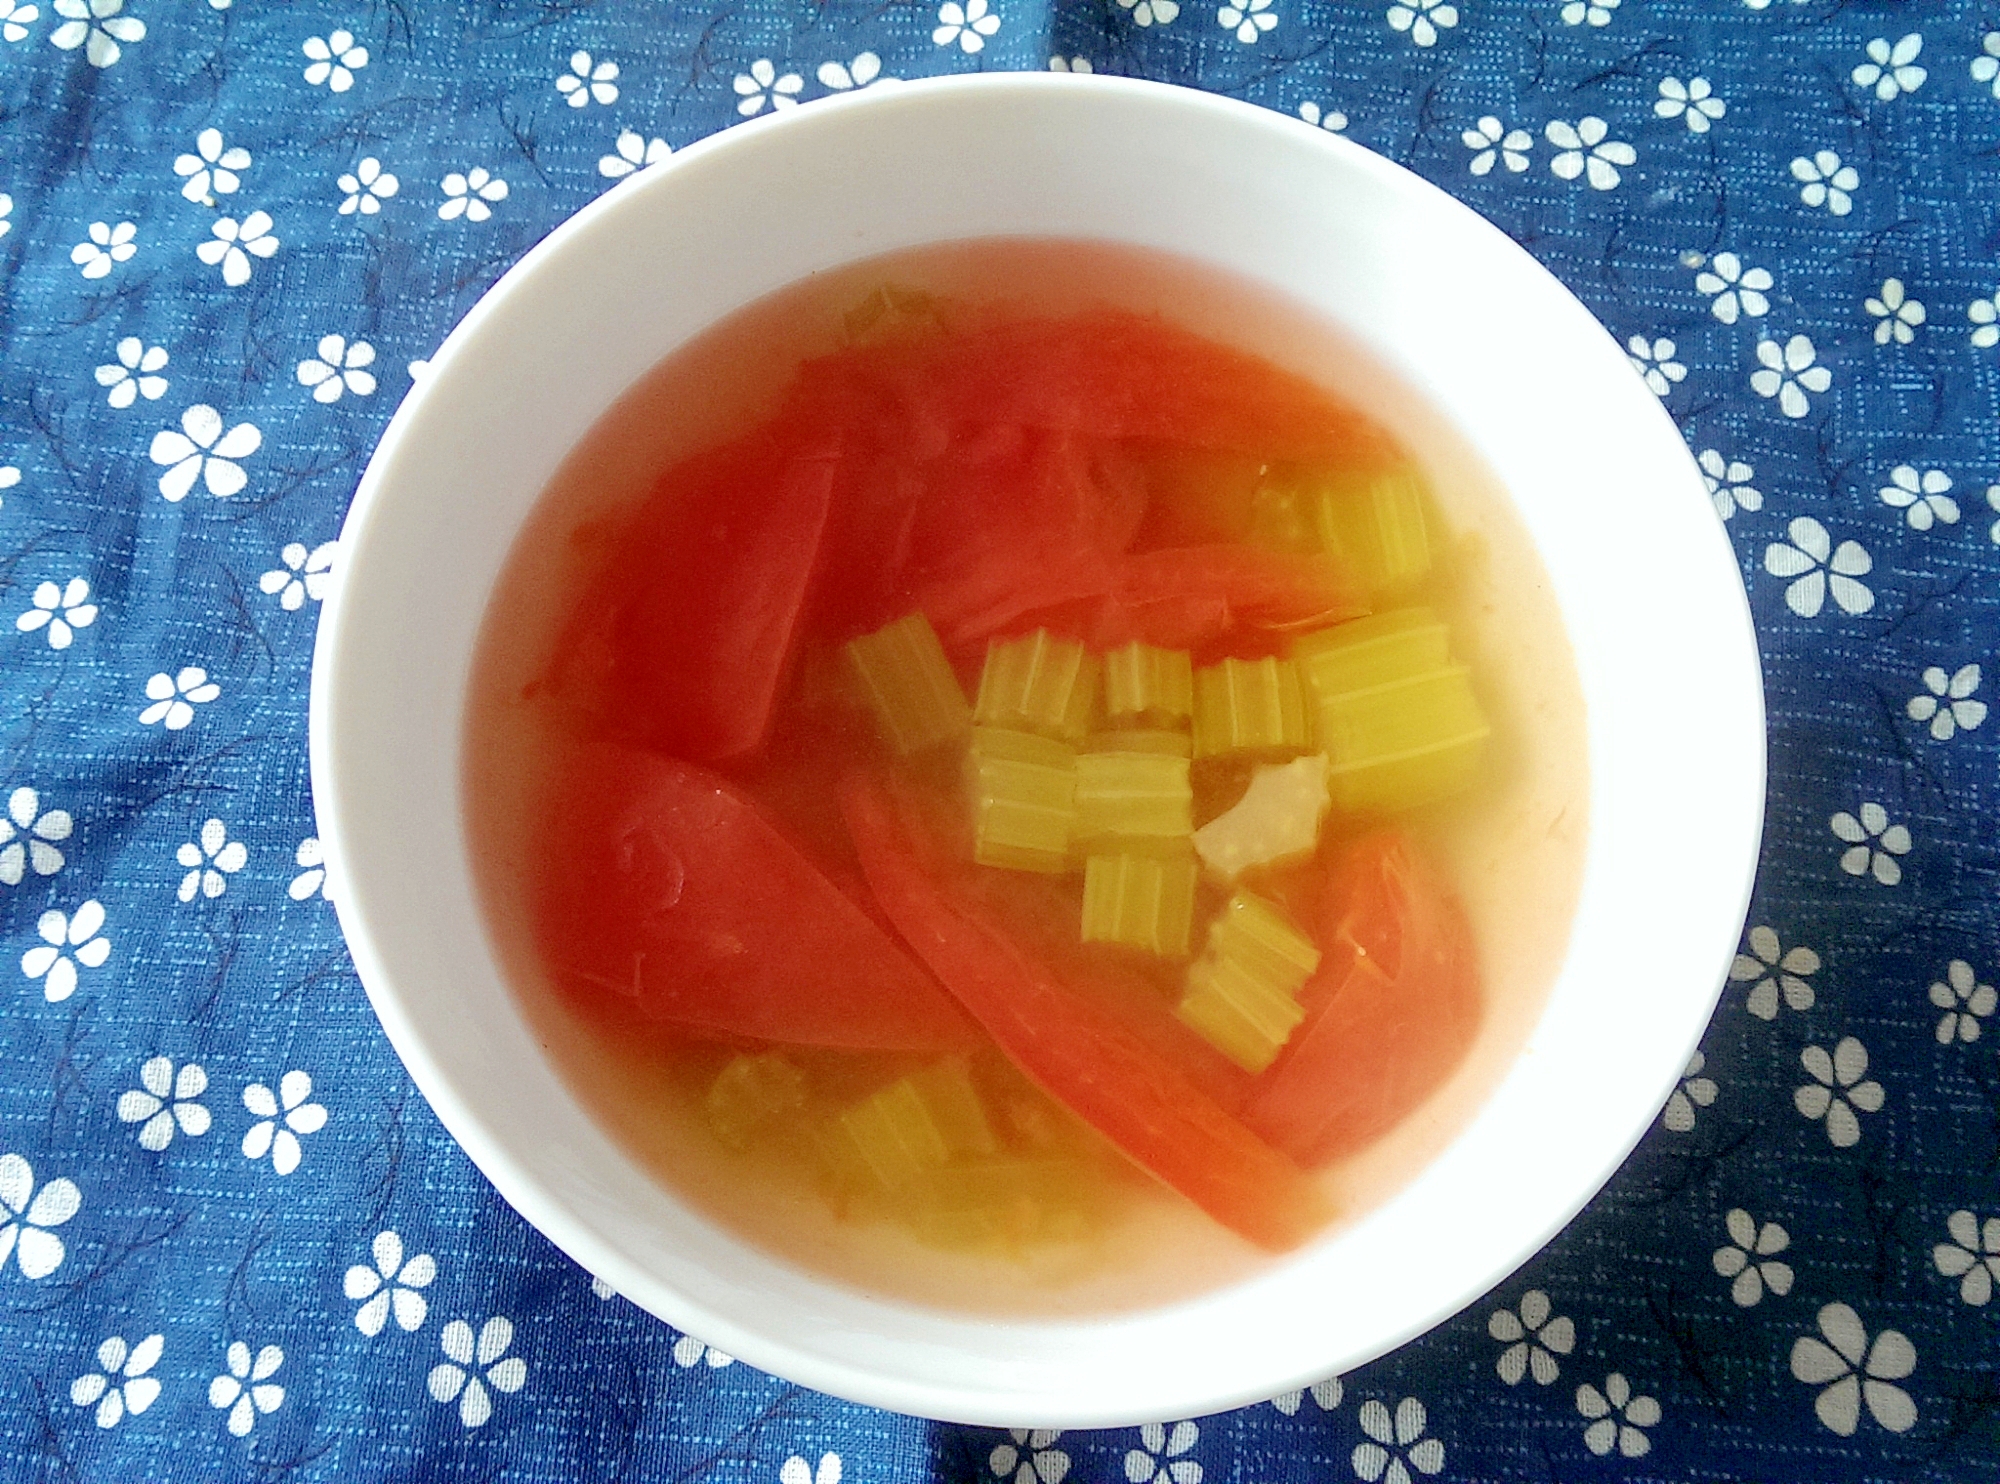 セロリとトマトのスープ